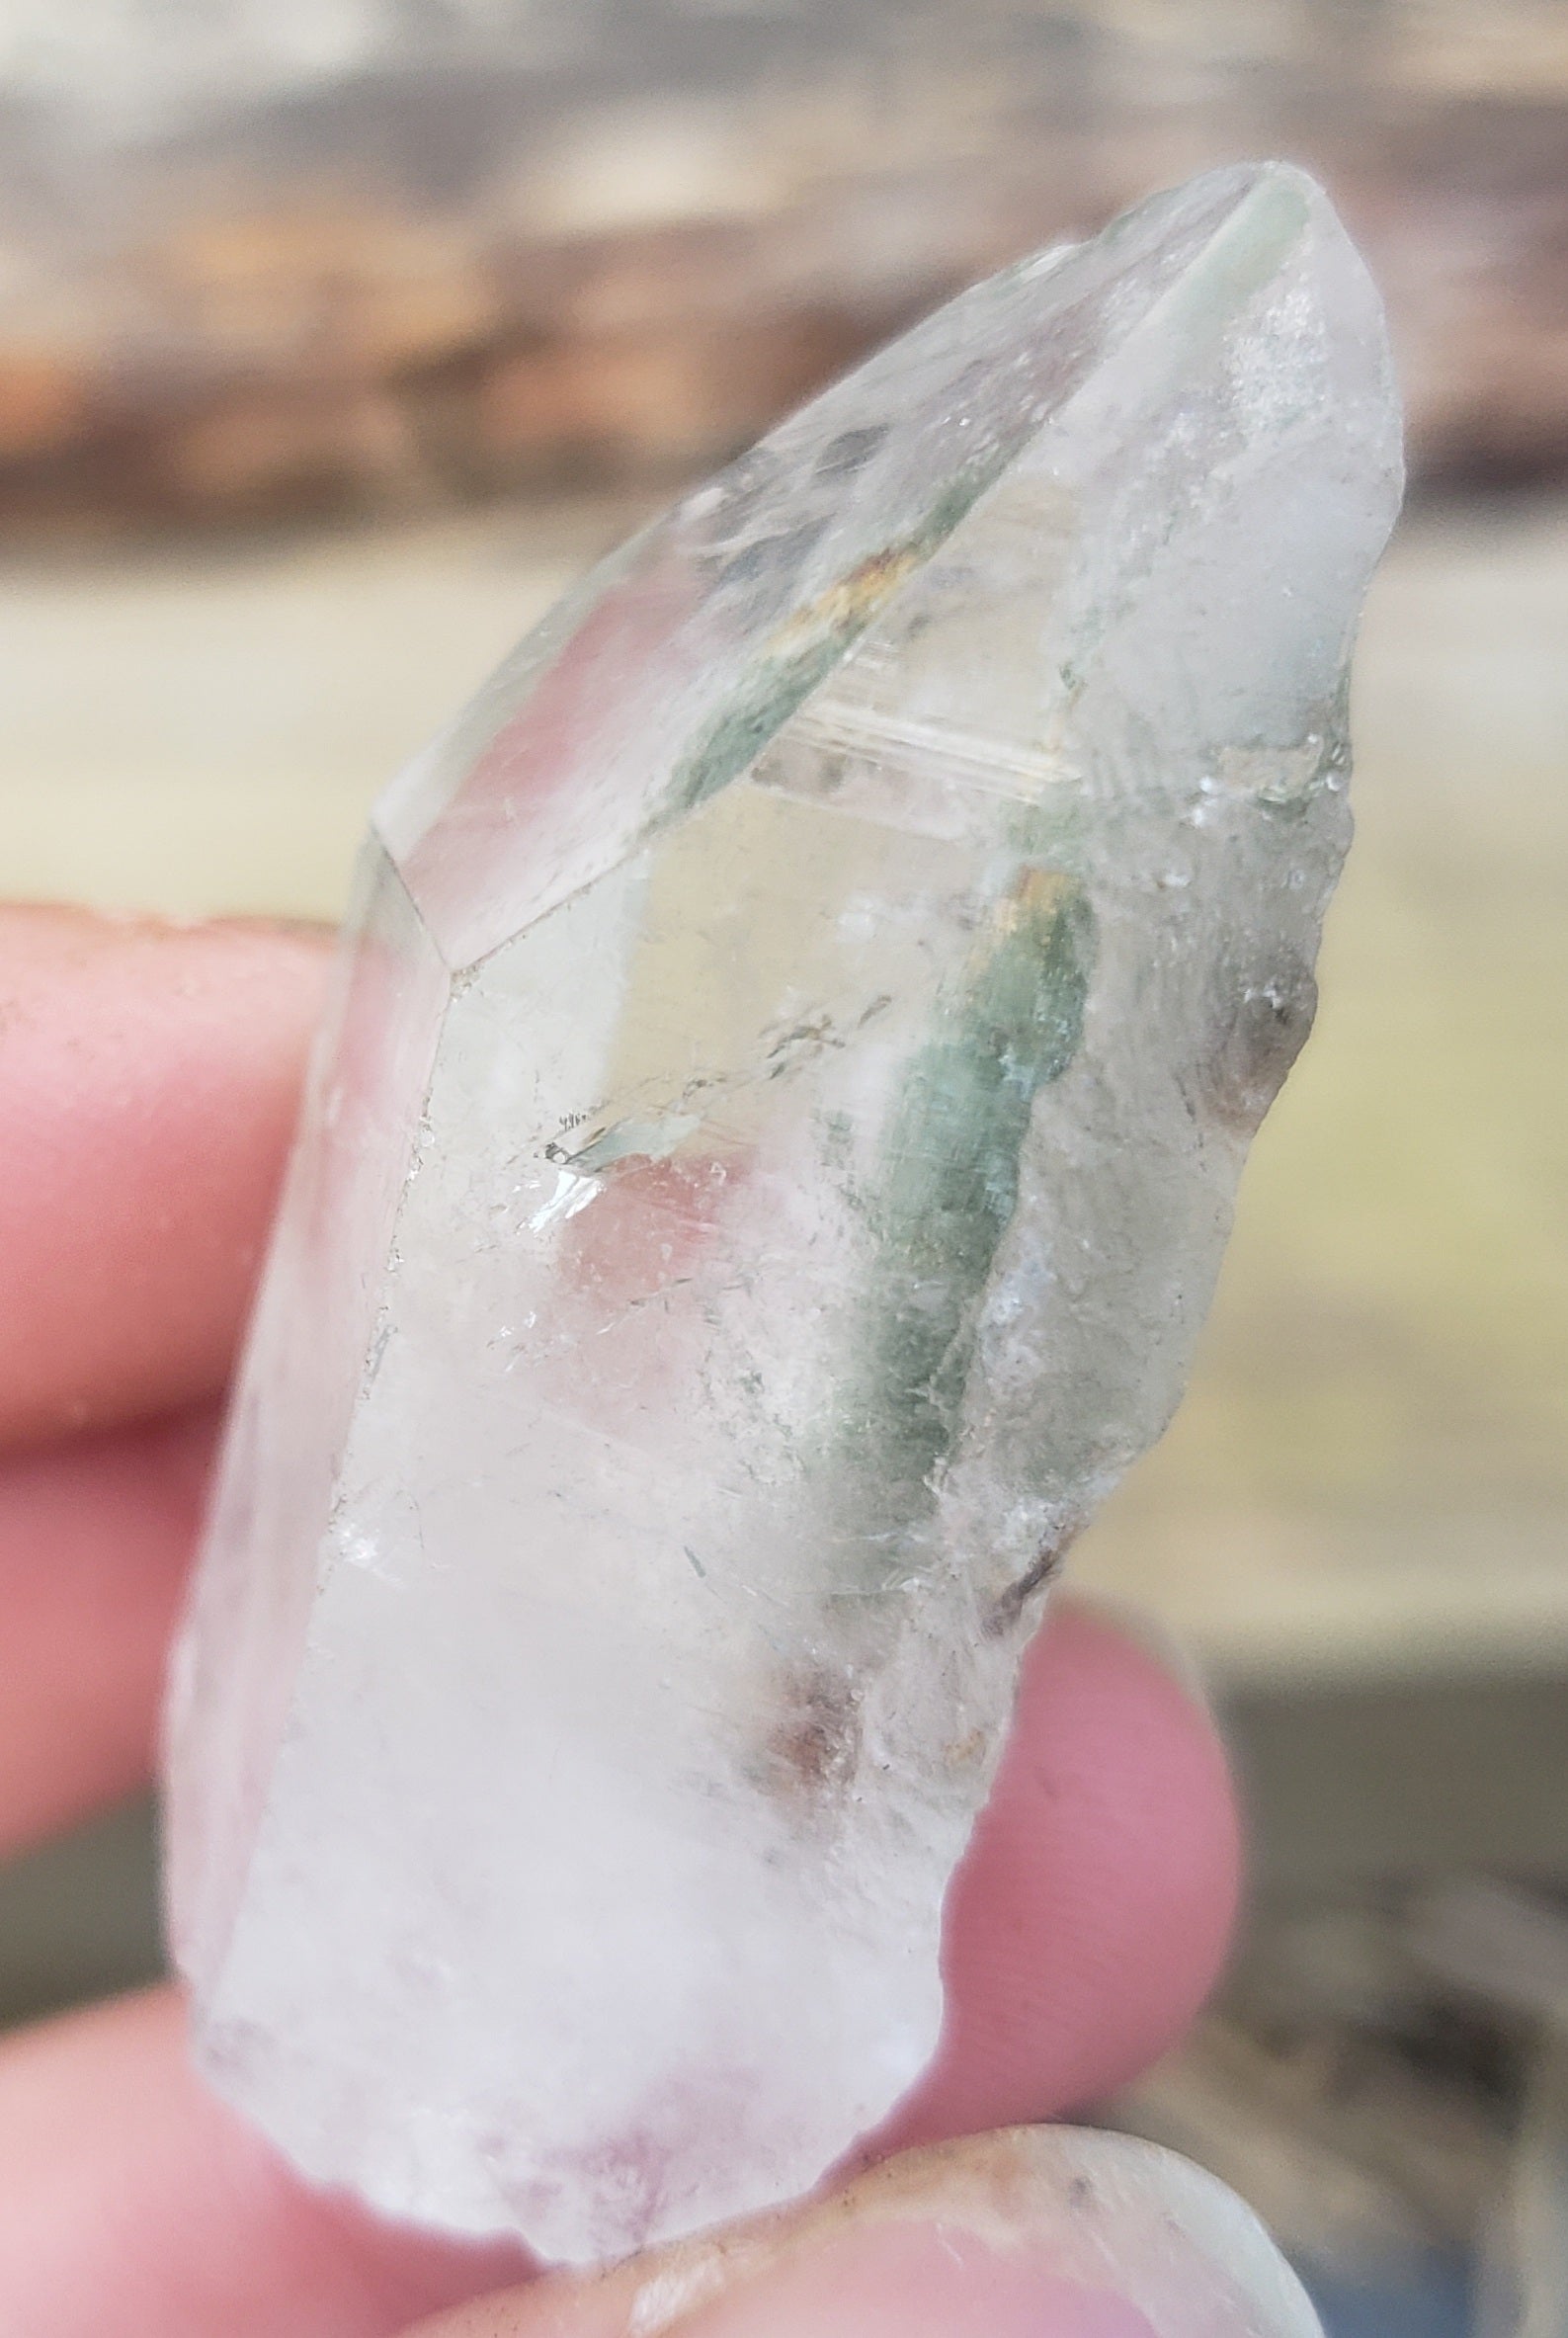 Inner scene garden quartz point - 20 grams